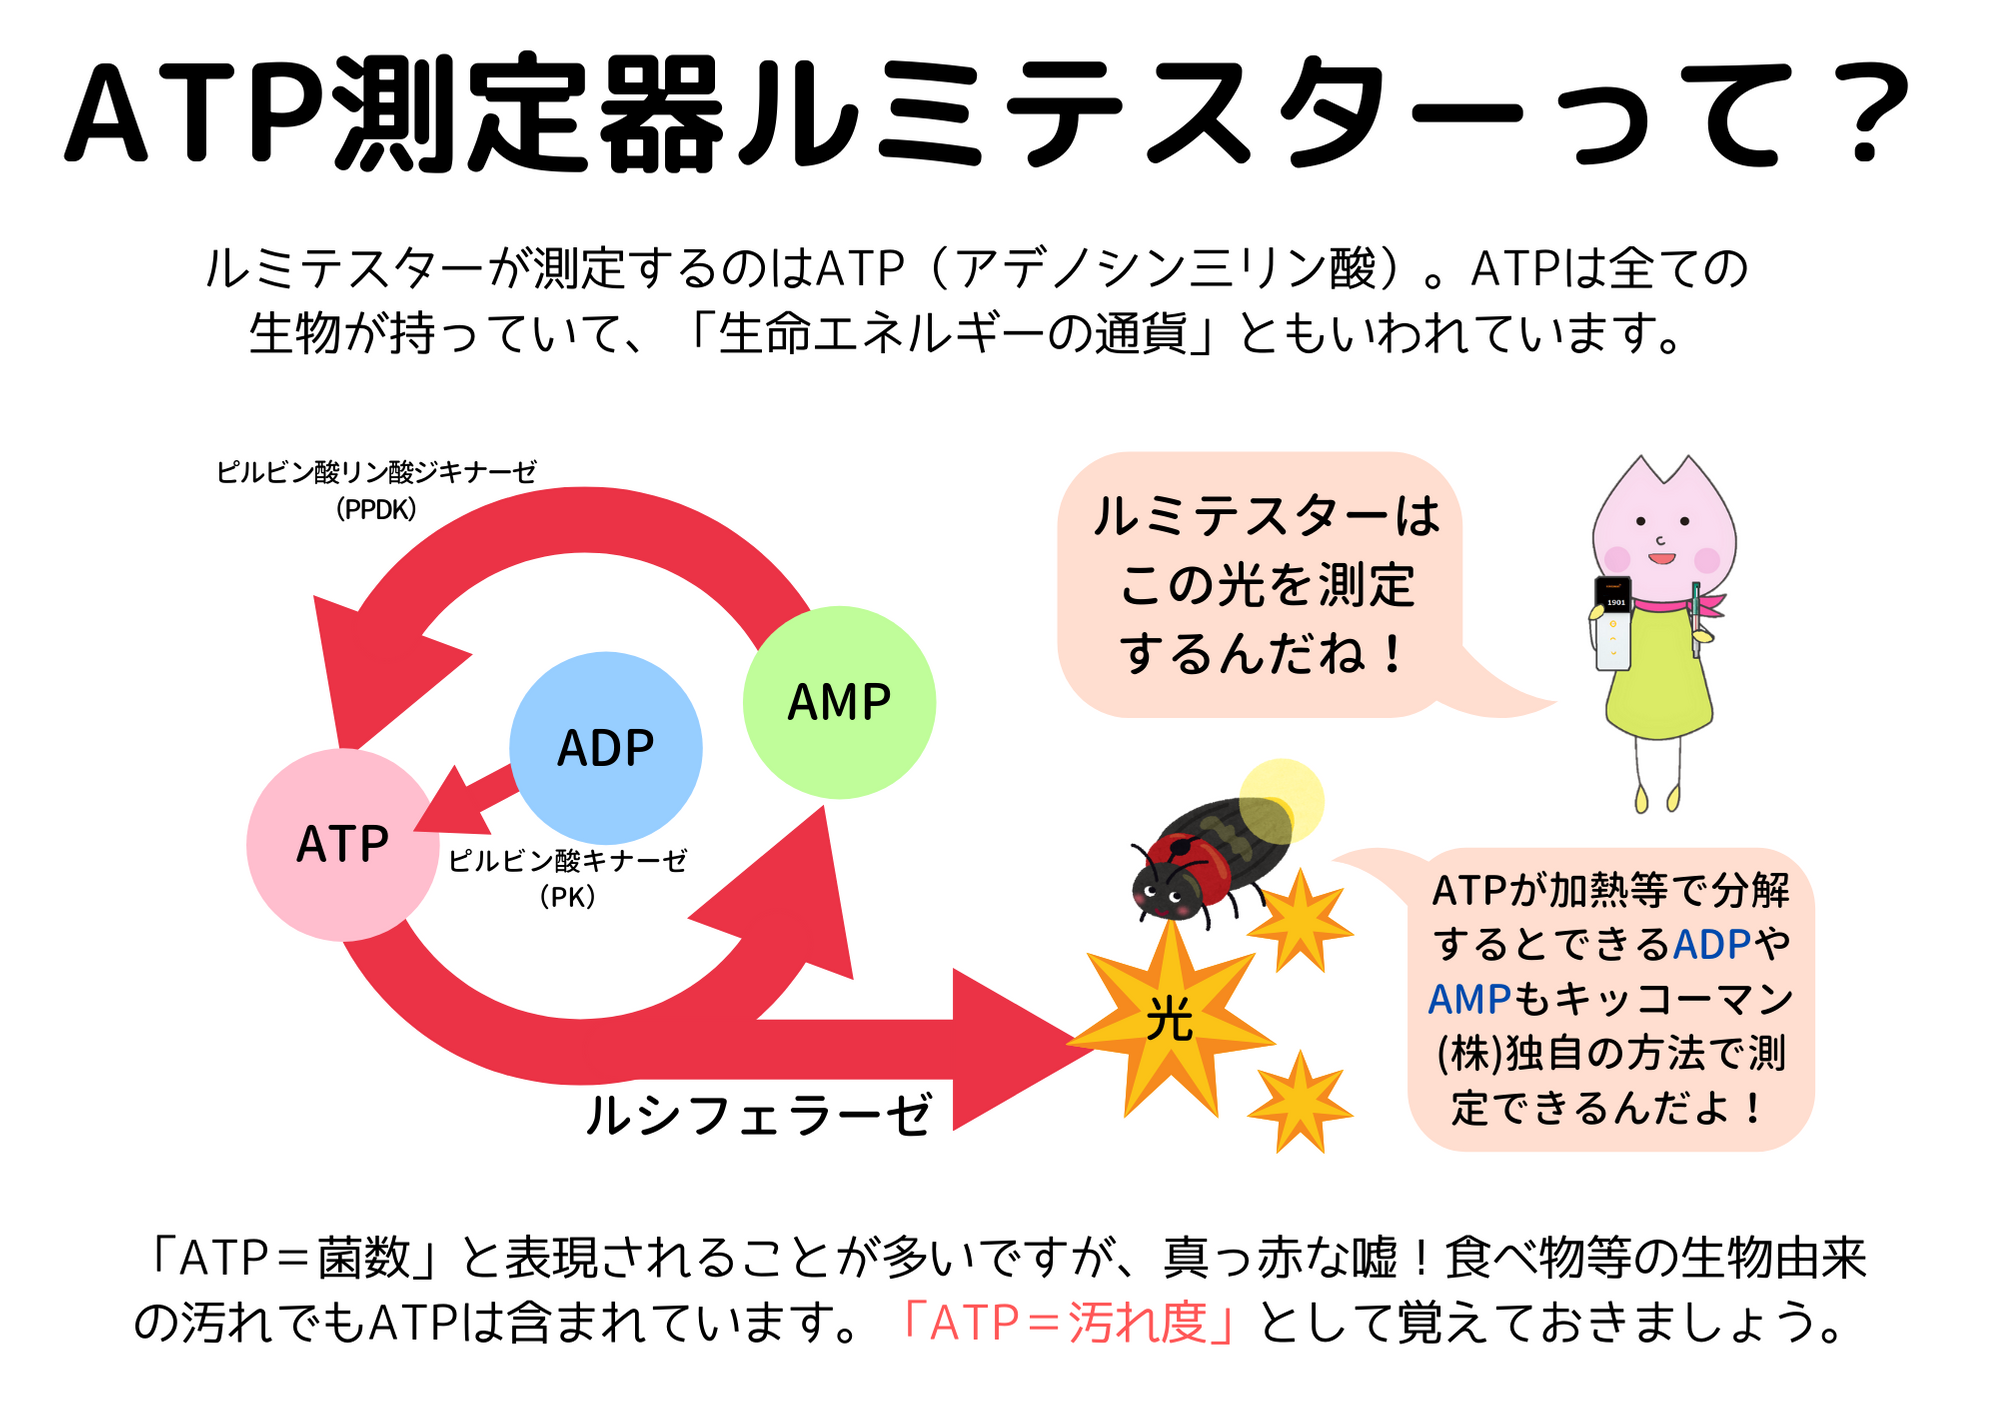 ATP測定器ルミテスターの原理